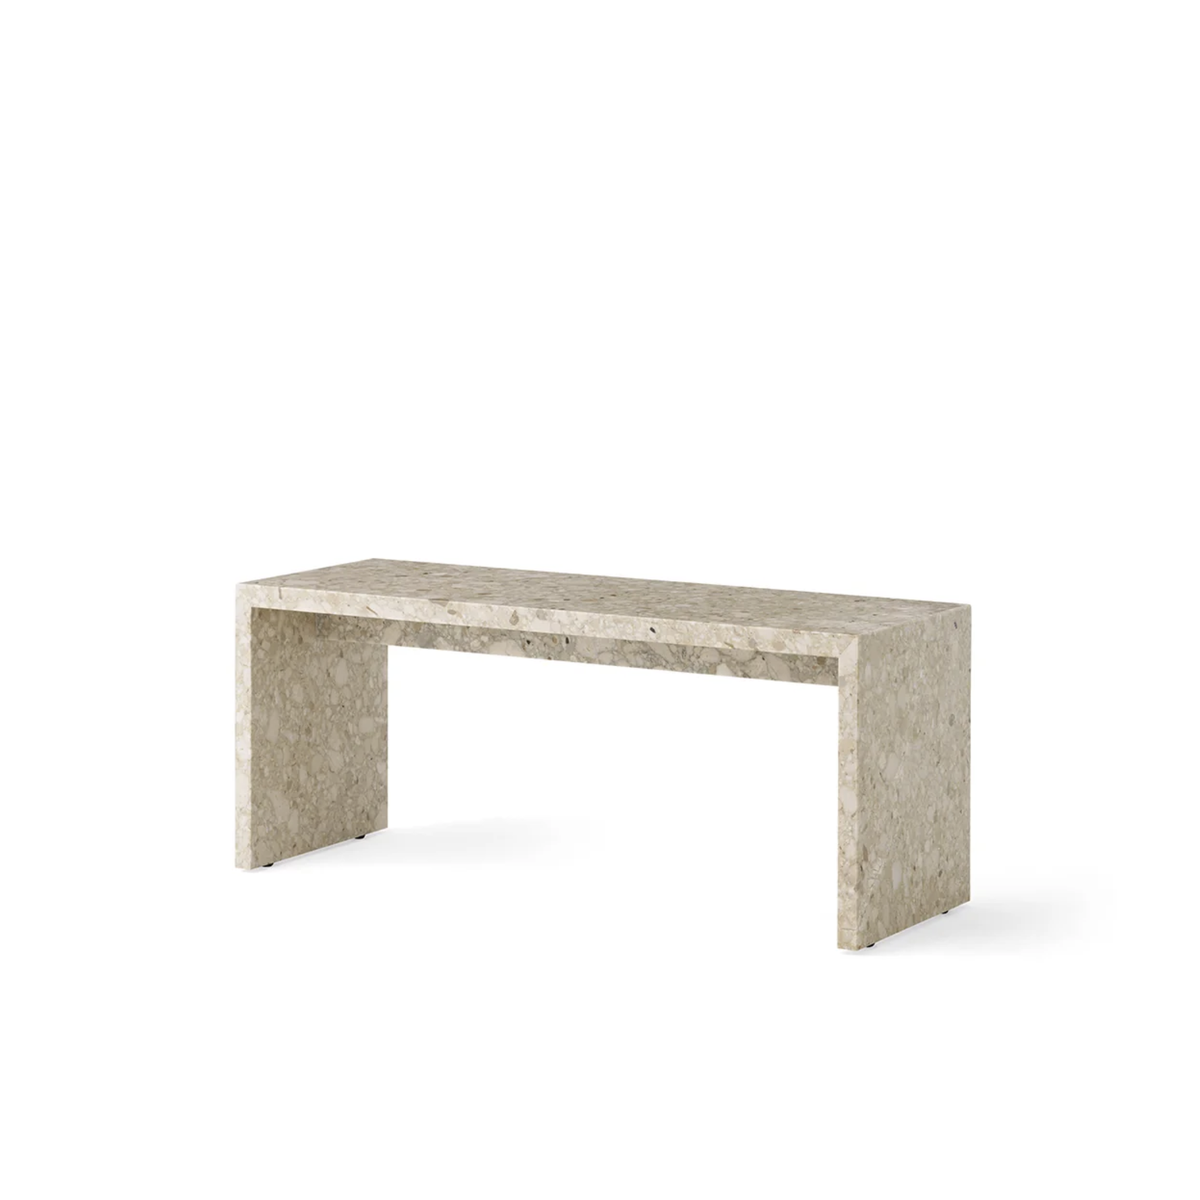 Plinth Bridge Marble Table - Sand Kunis Breccia